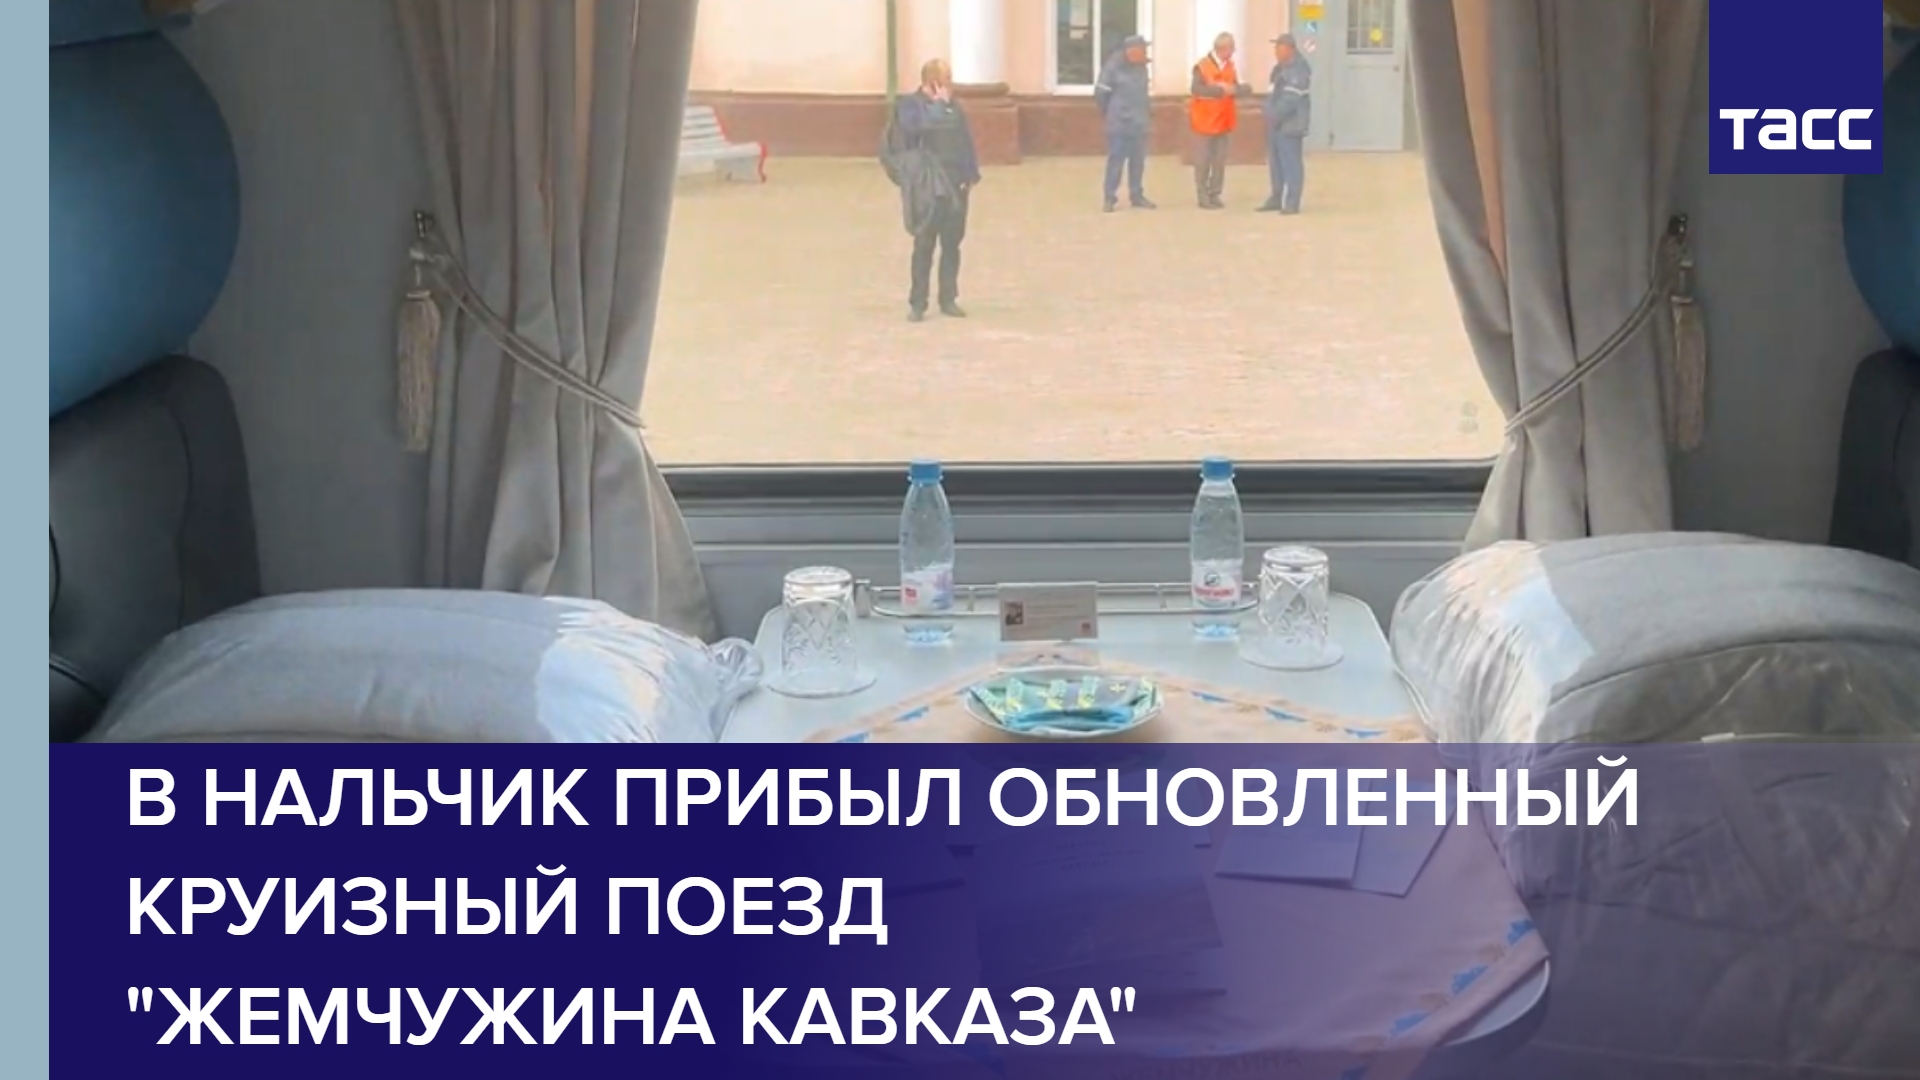 В Нальчик прибыл обновленный круизный поезд "Жемчужина Кавказа"